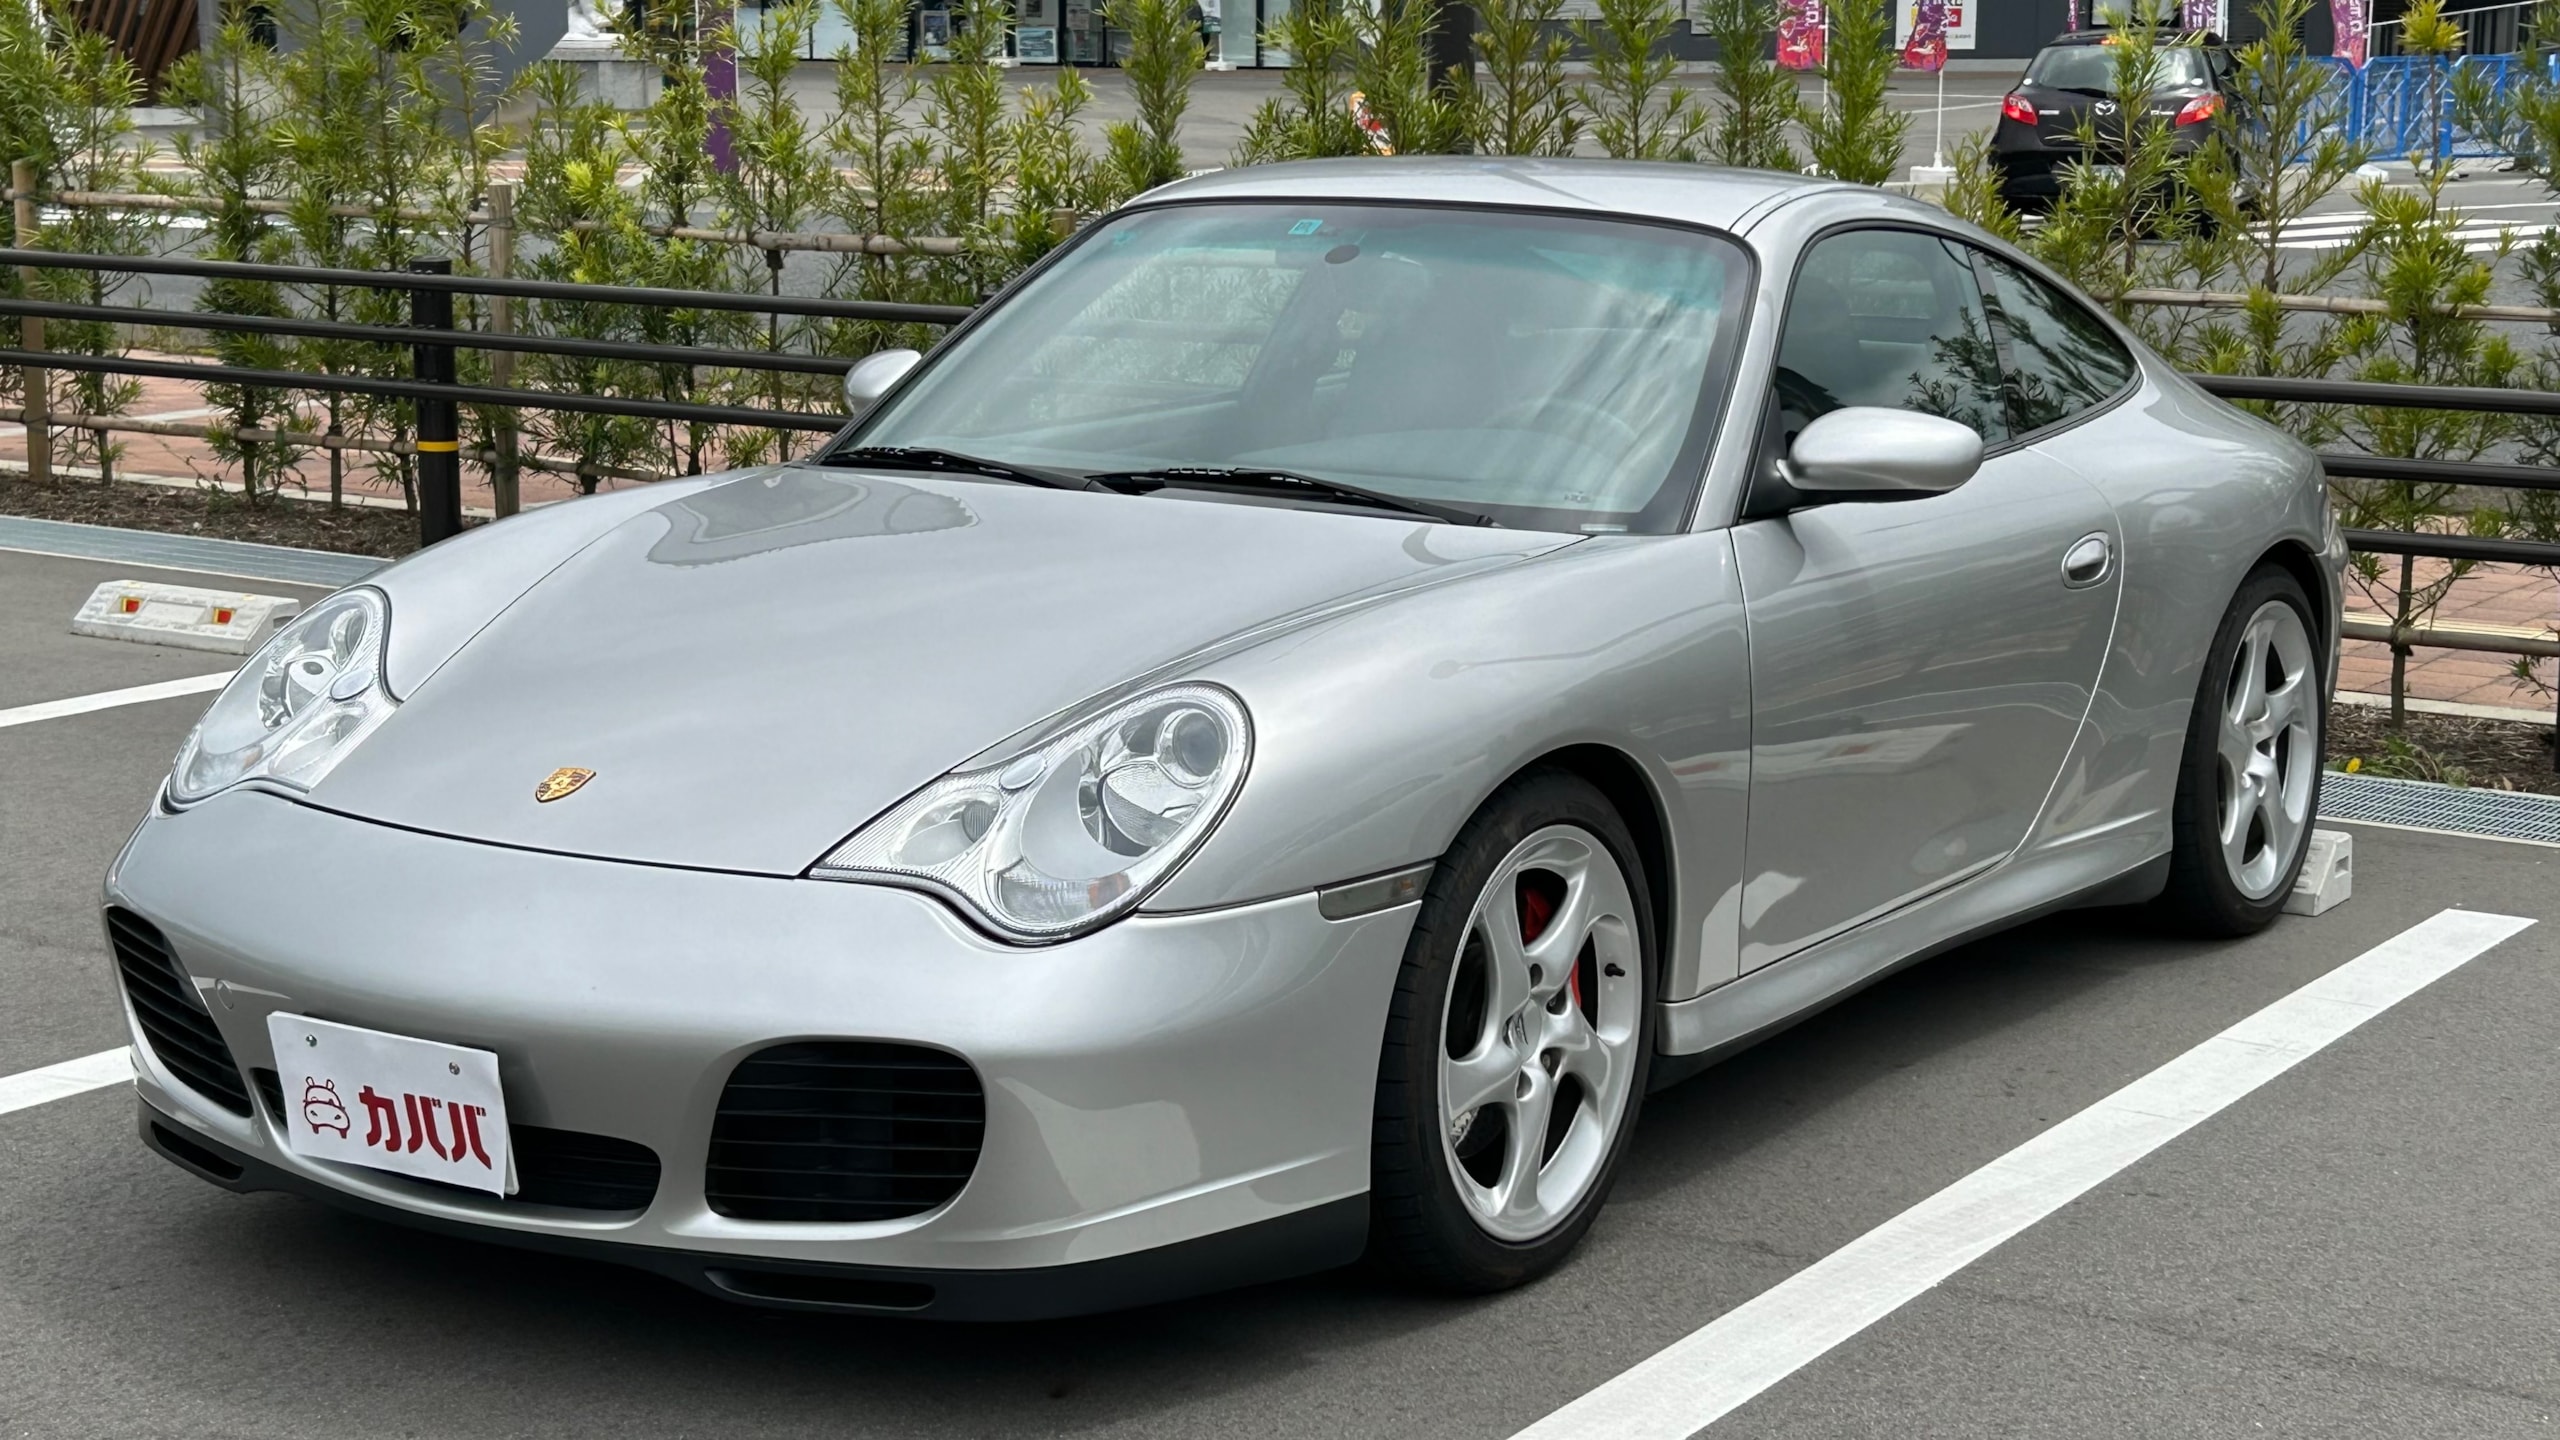 911 カレラ 4S(ポルシェ)2002年式 368万円の中古車 - 自動車フリマ ...